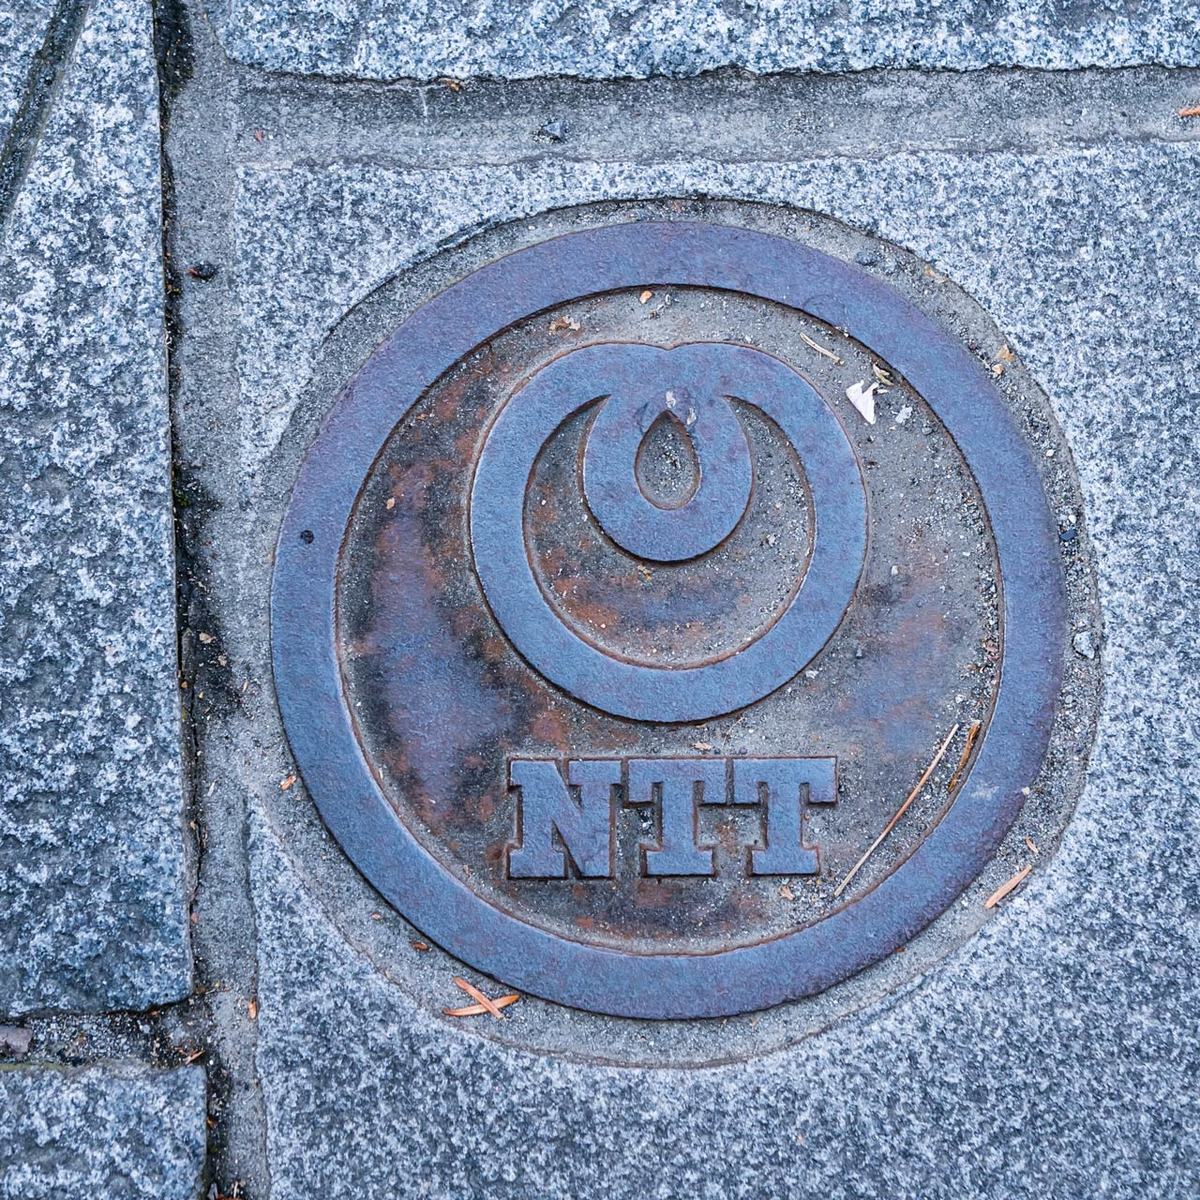 NTTのロゴマークが見えるマンホールカバー